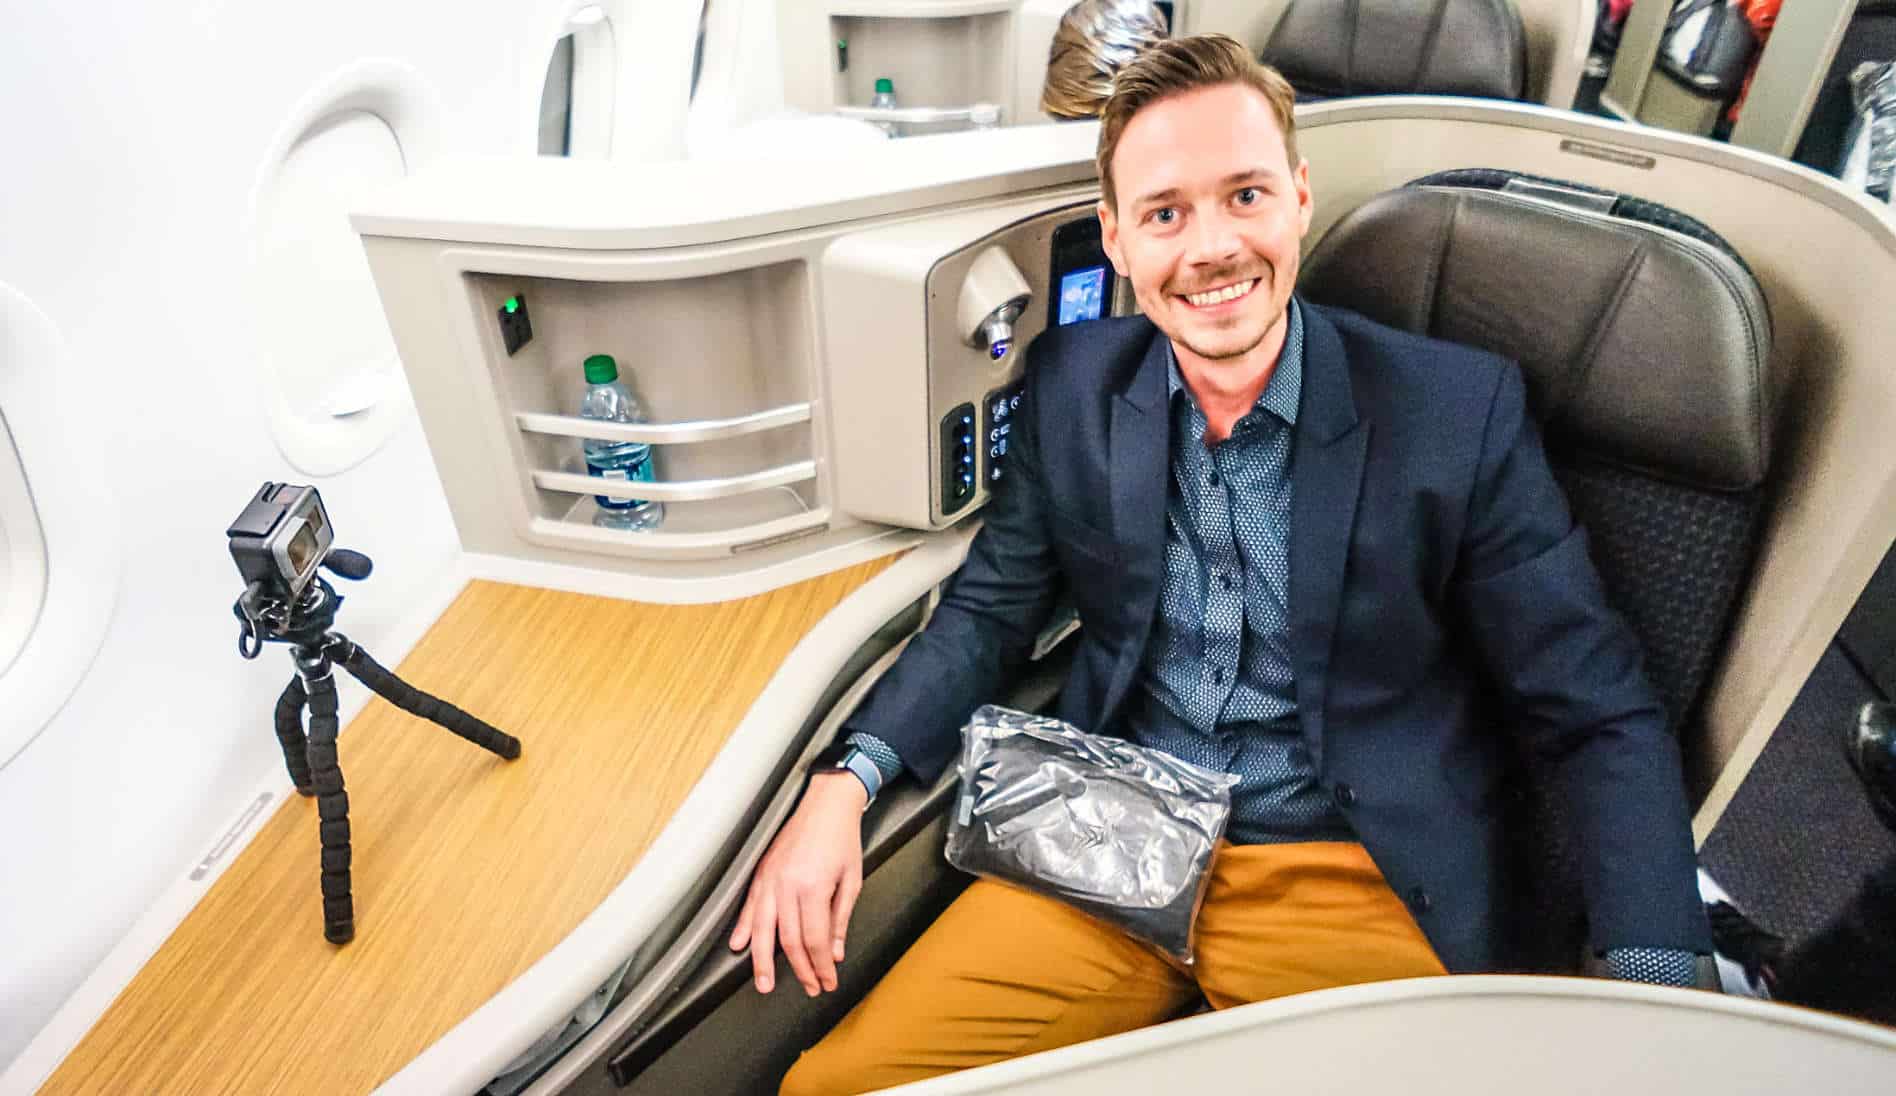 2018 04 14 American Airlines A321 First Class vielfliegerprogramm